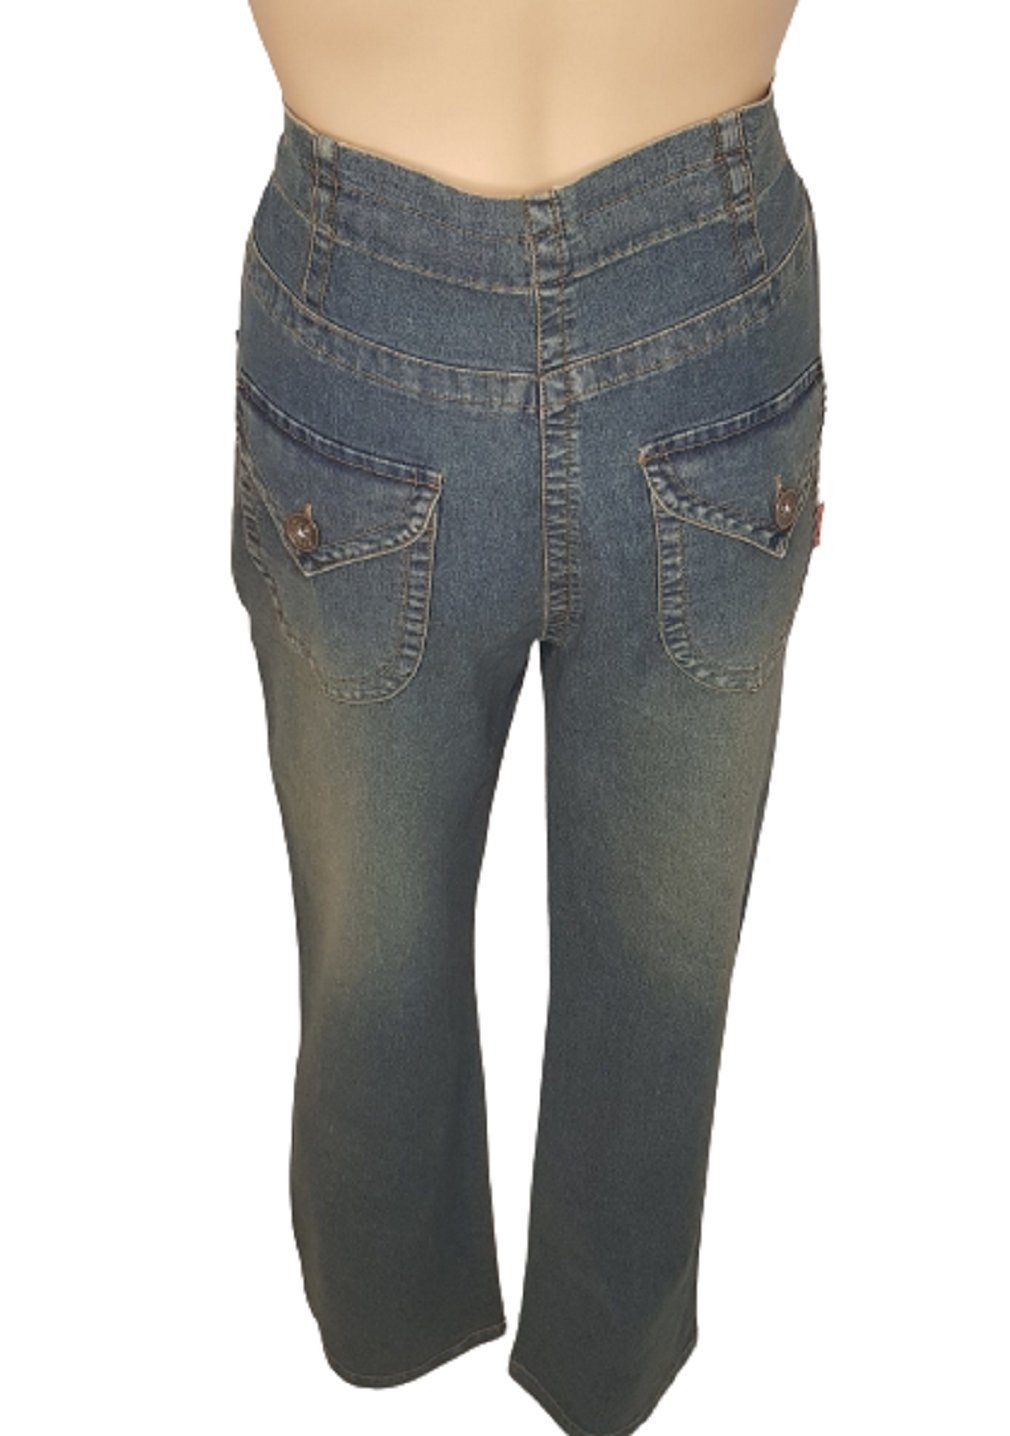 Damen Umstandsmode fischer collection Umstandshose Umstandshose 22101 fischer collection indigo Jeans